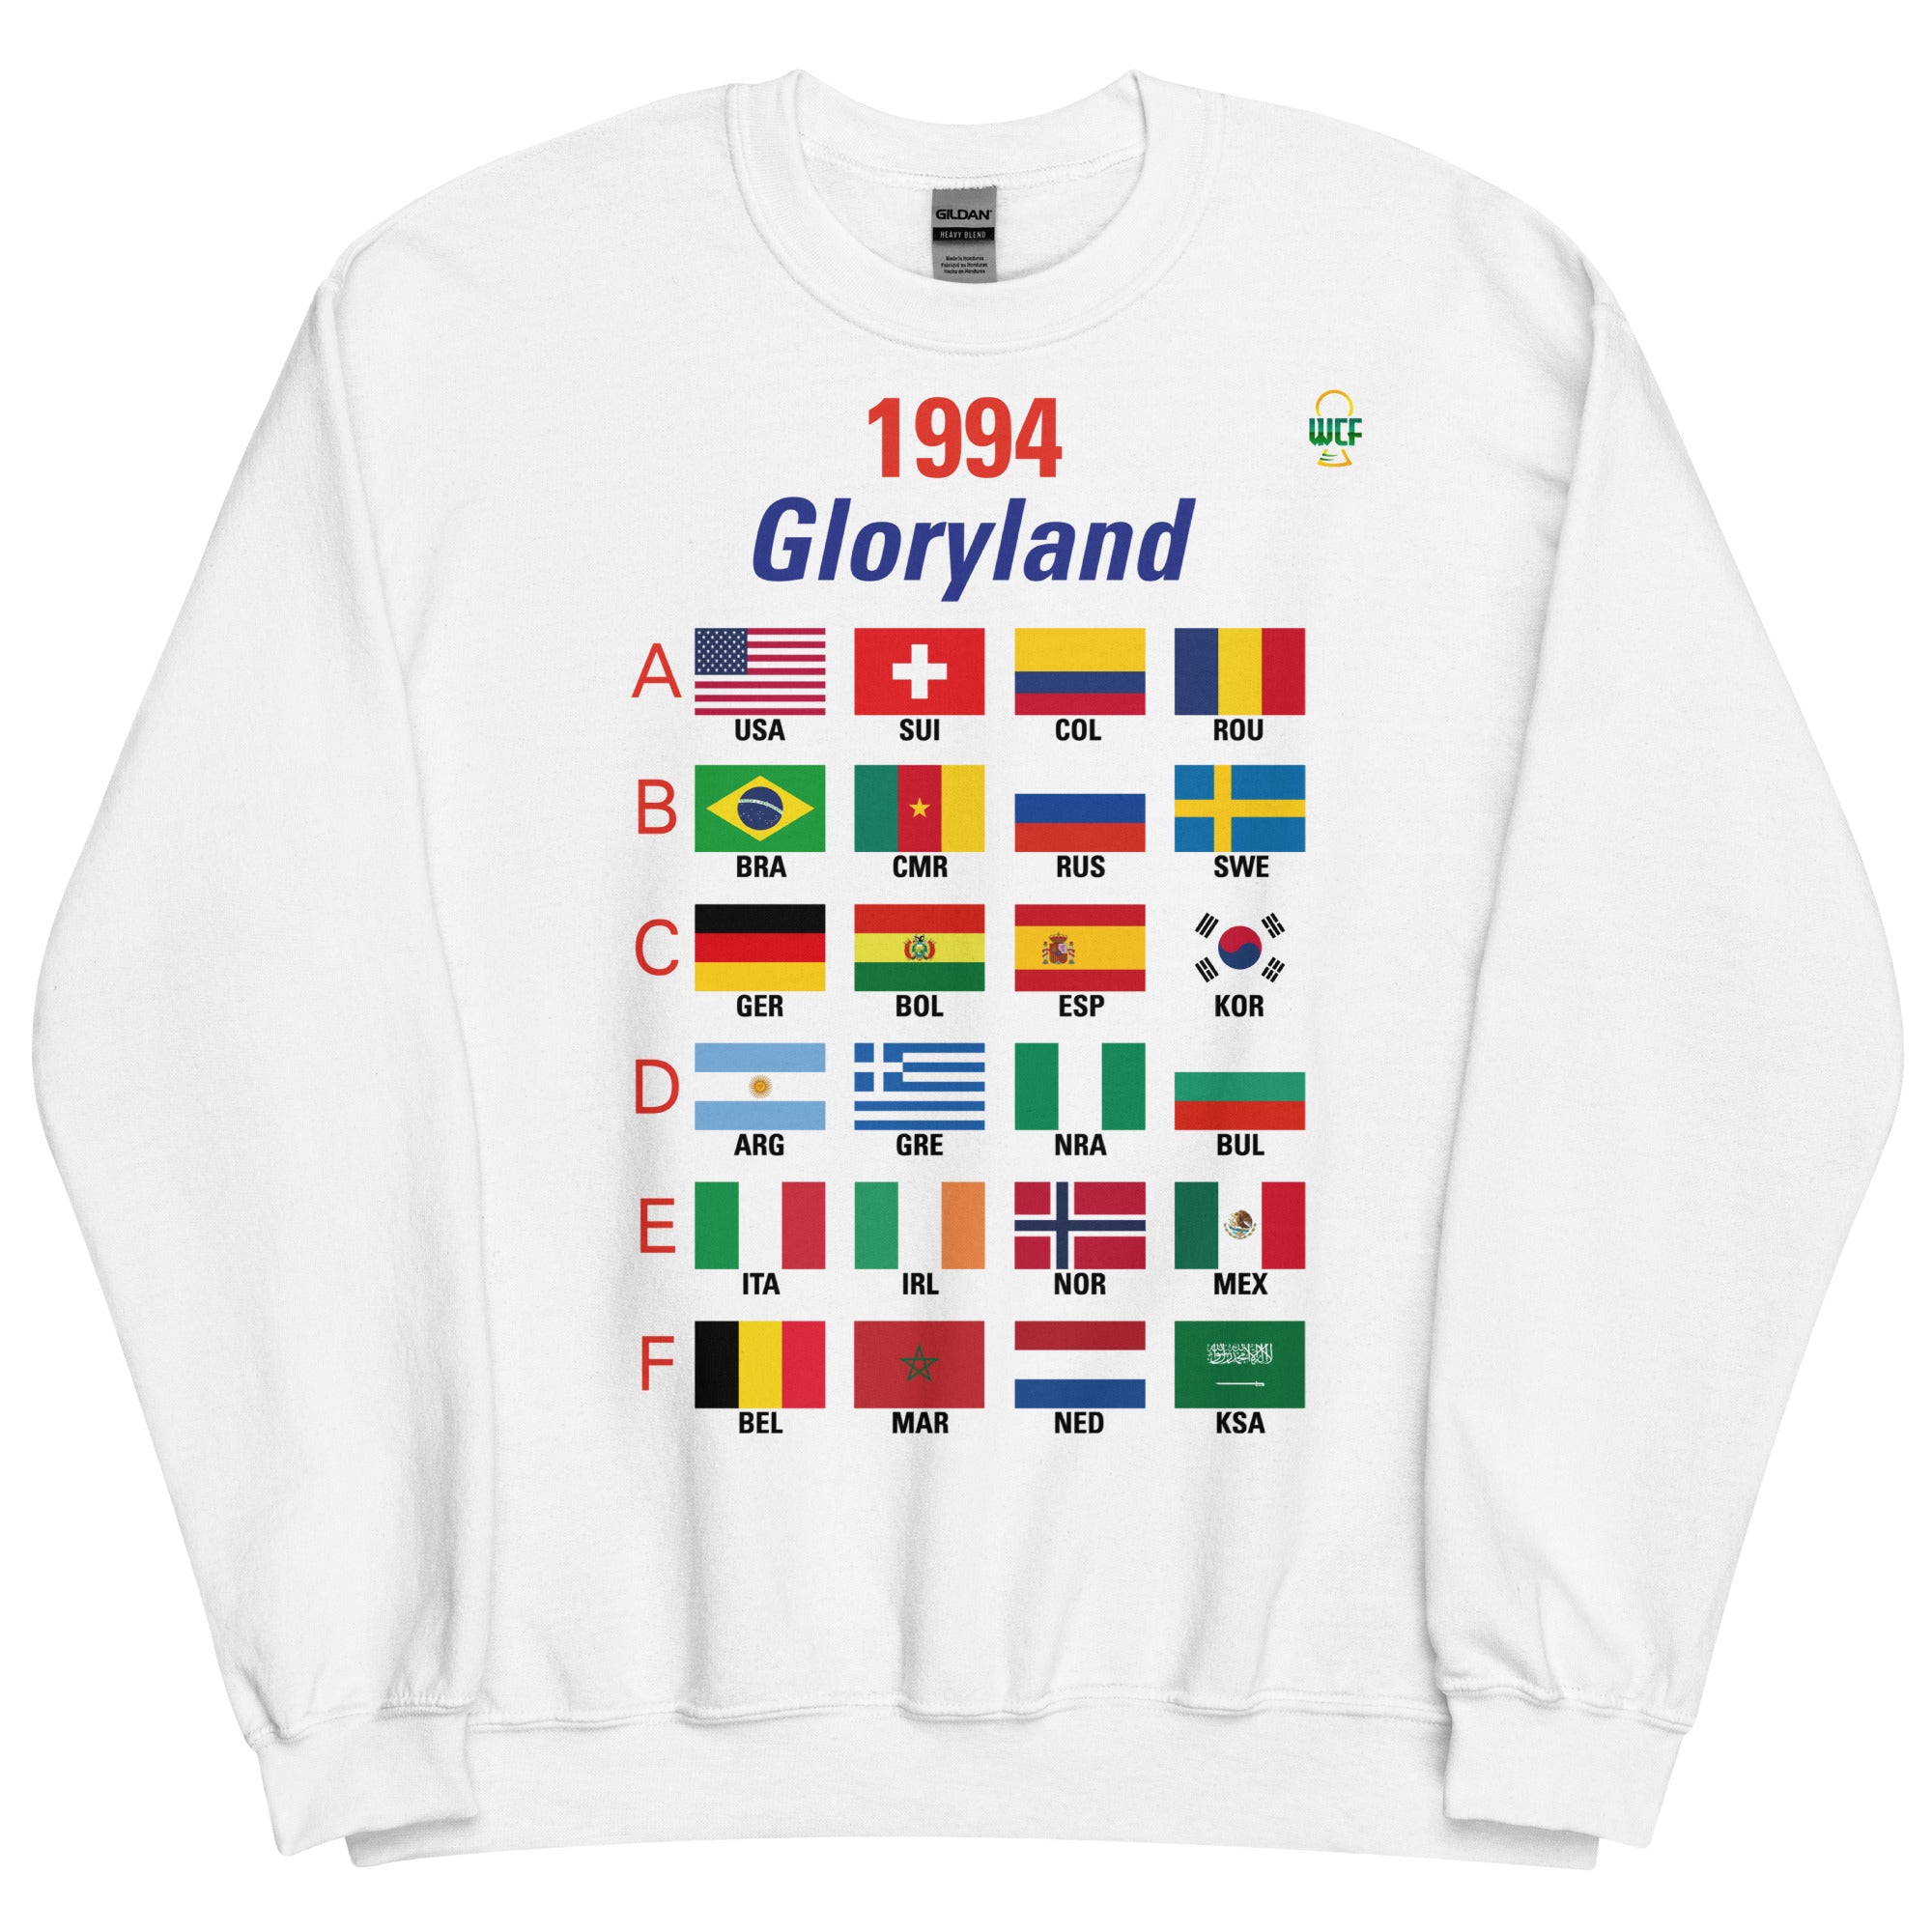 FIFA World Cup USA 1994 Sweatshirt - Gloryland